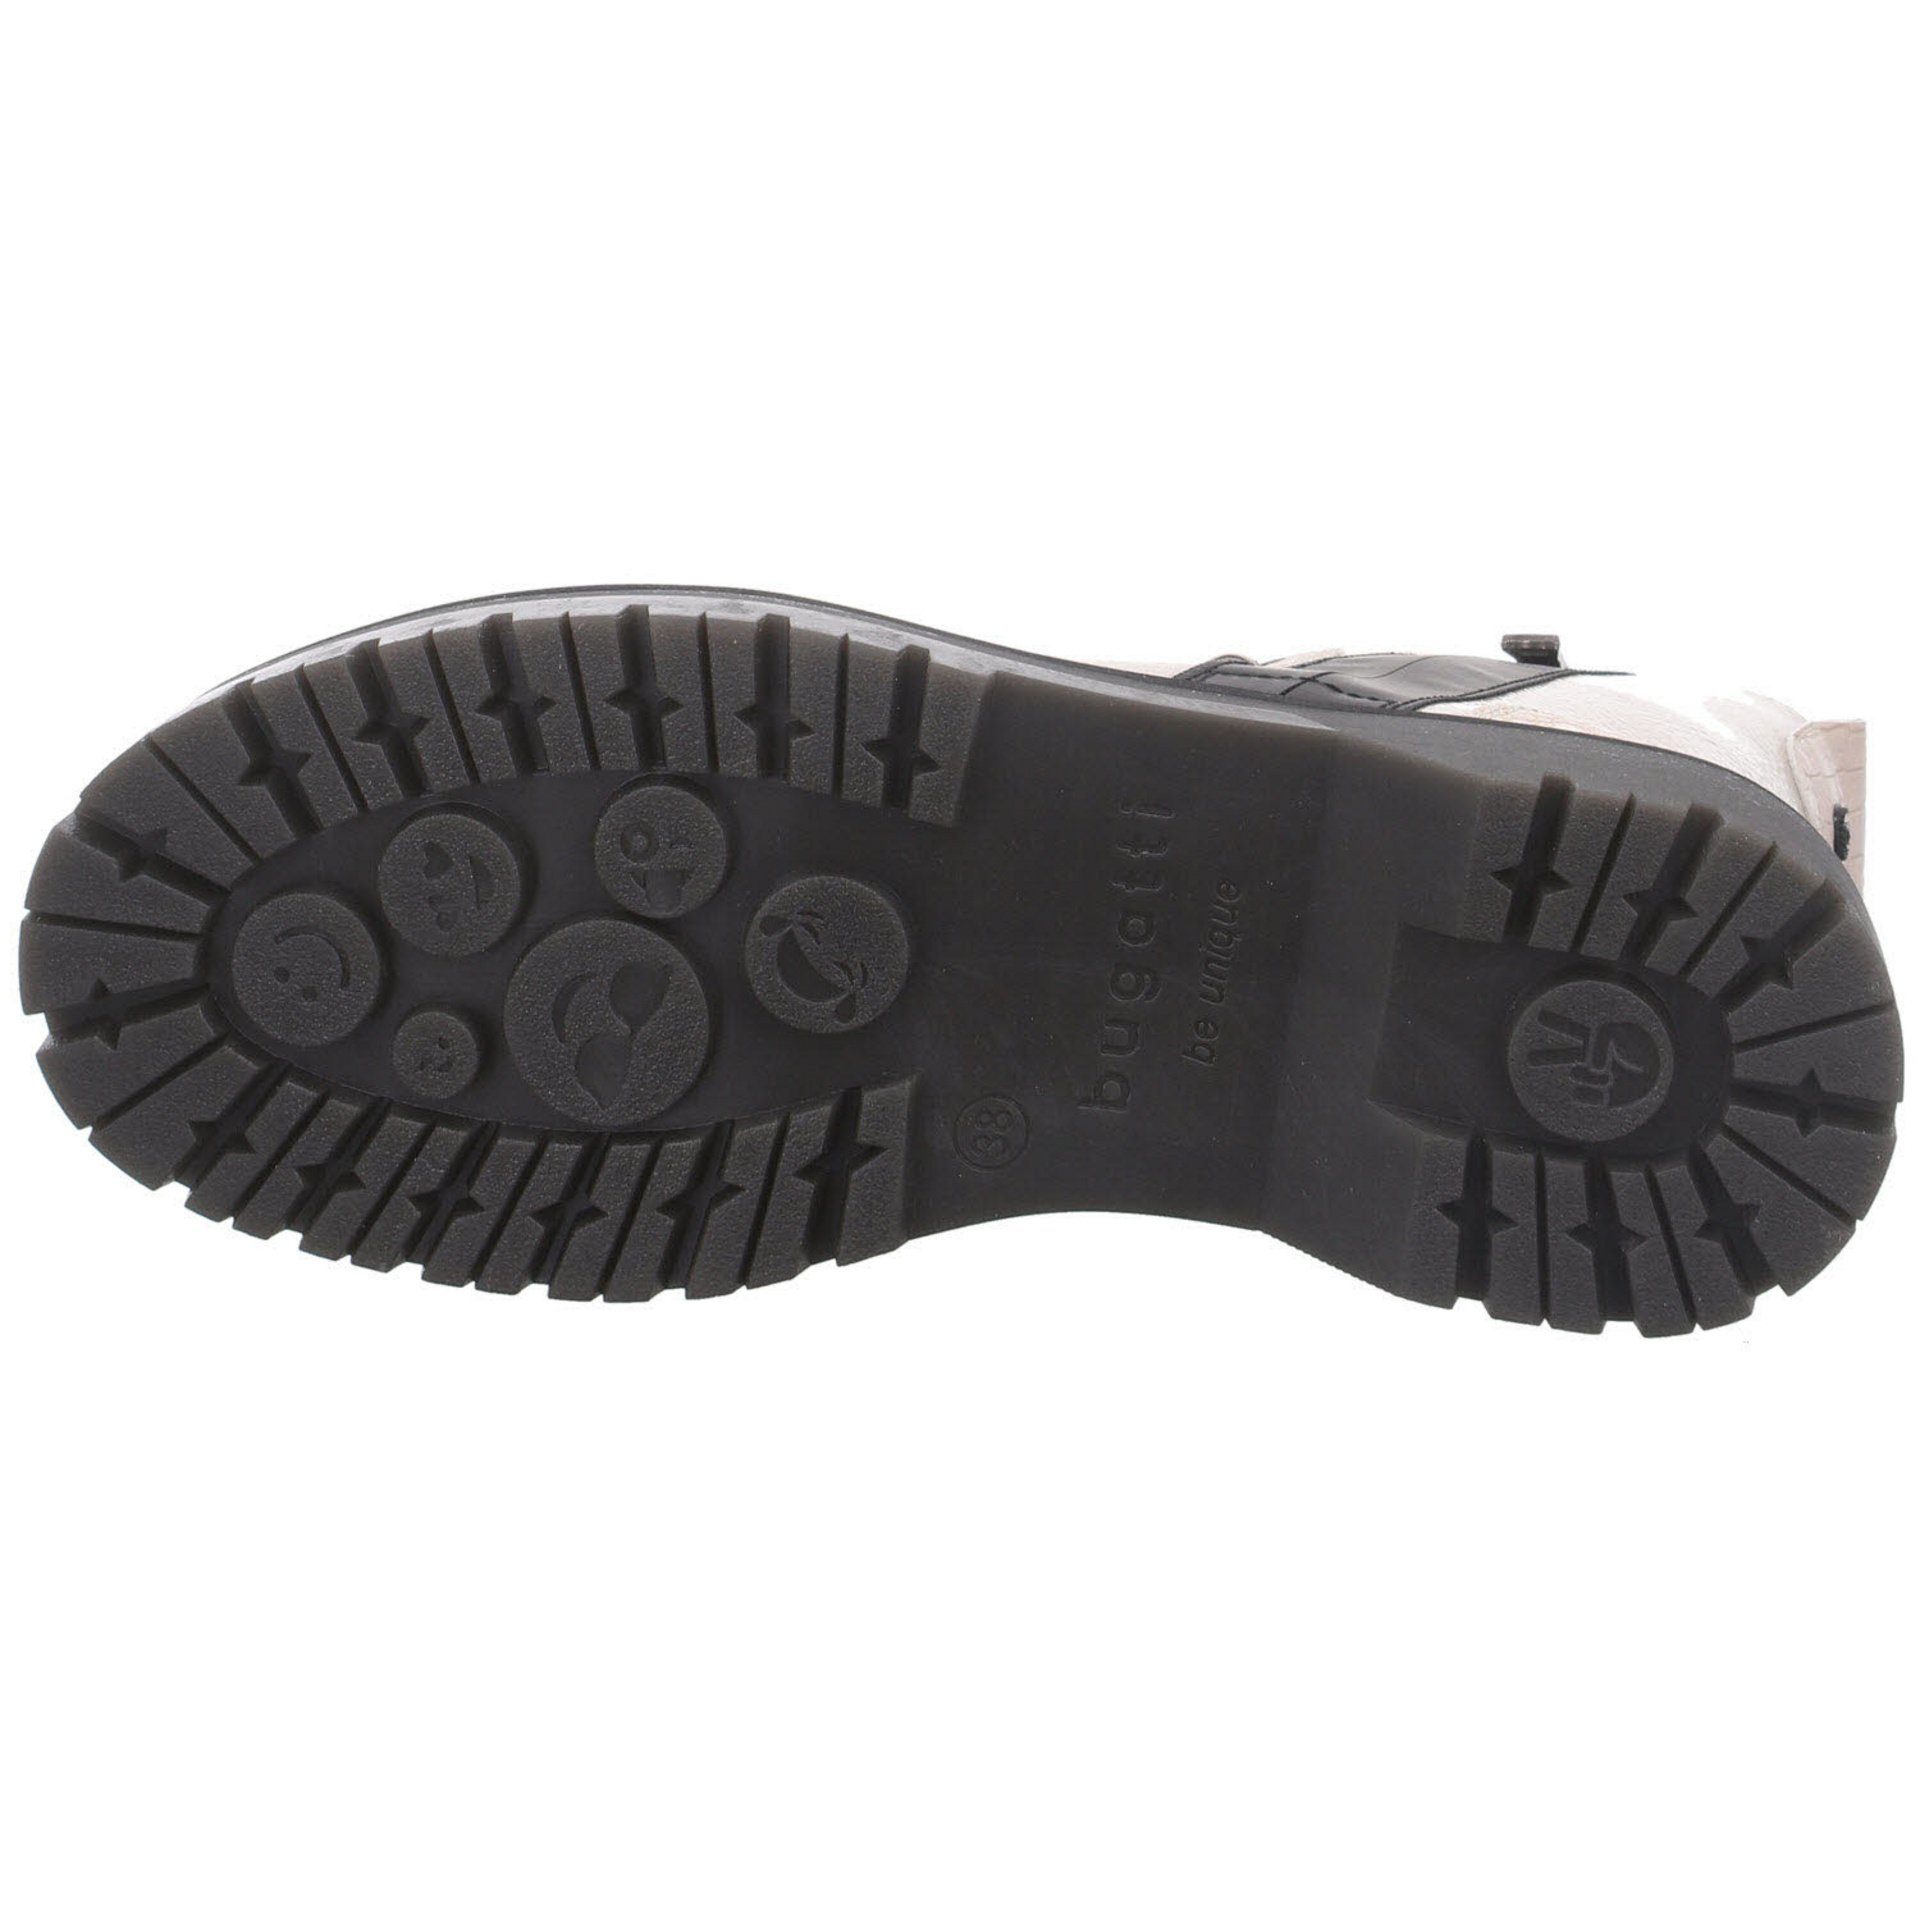 Elegant Schuhe kombi-schwarz bugatti Synthetik Freizeit Big Boots Stiefel beige Damen Stiefel